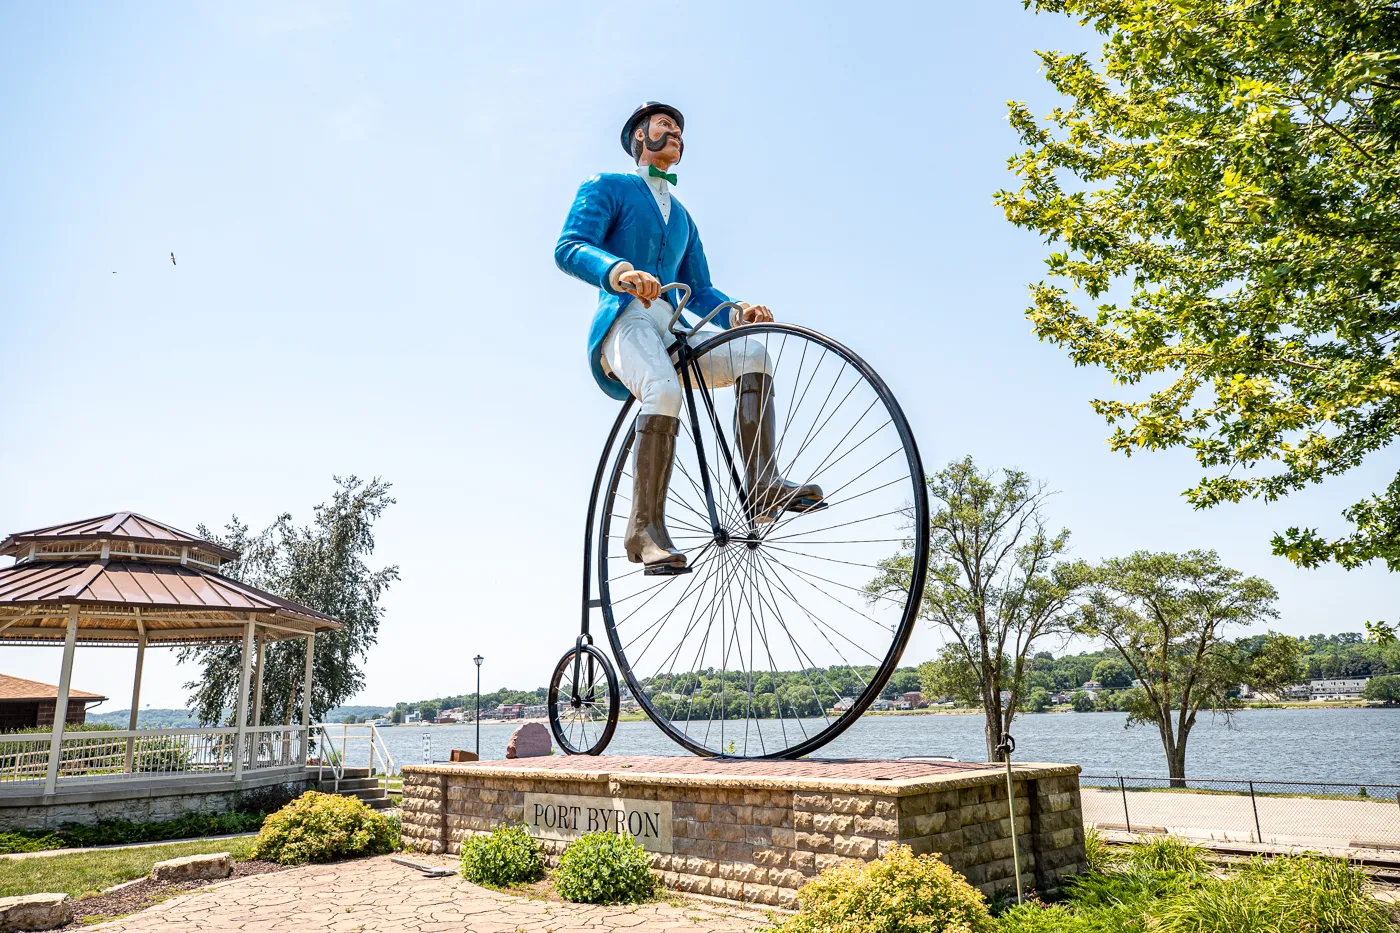 Will B. Rolling - Fiberglass Bicyclist in Port Byron, Illinois